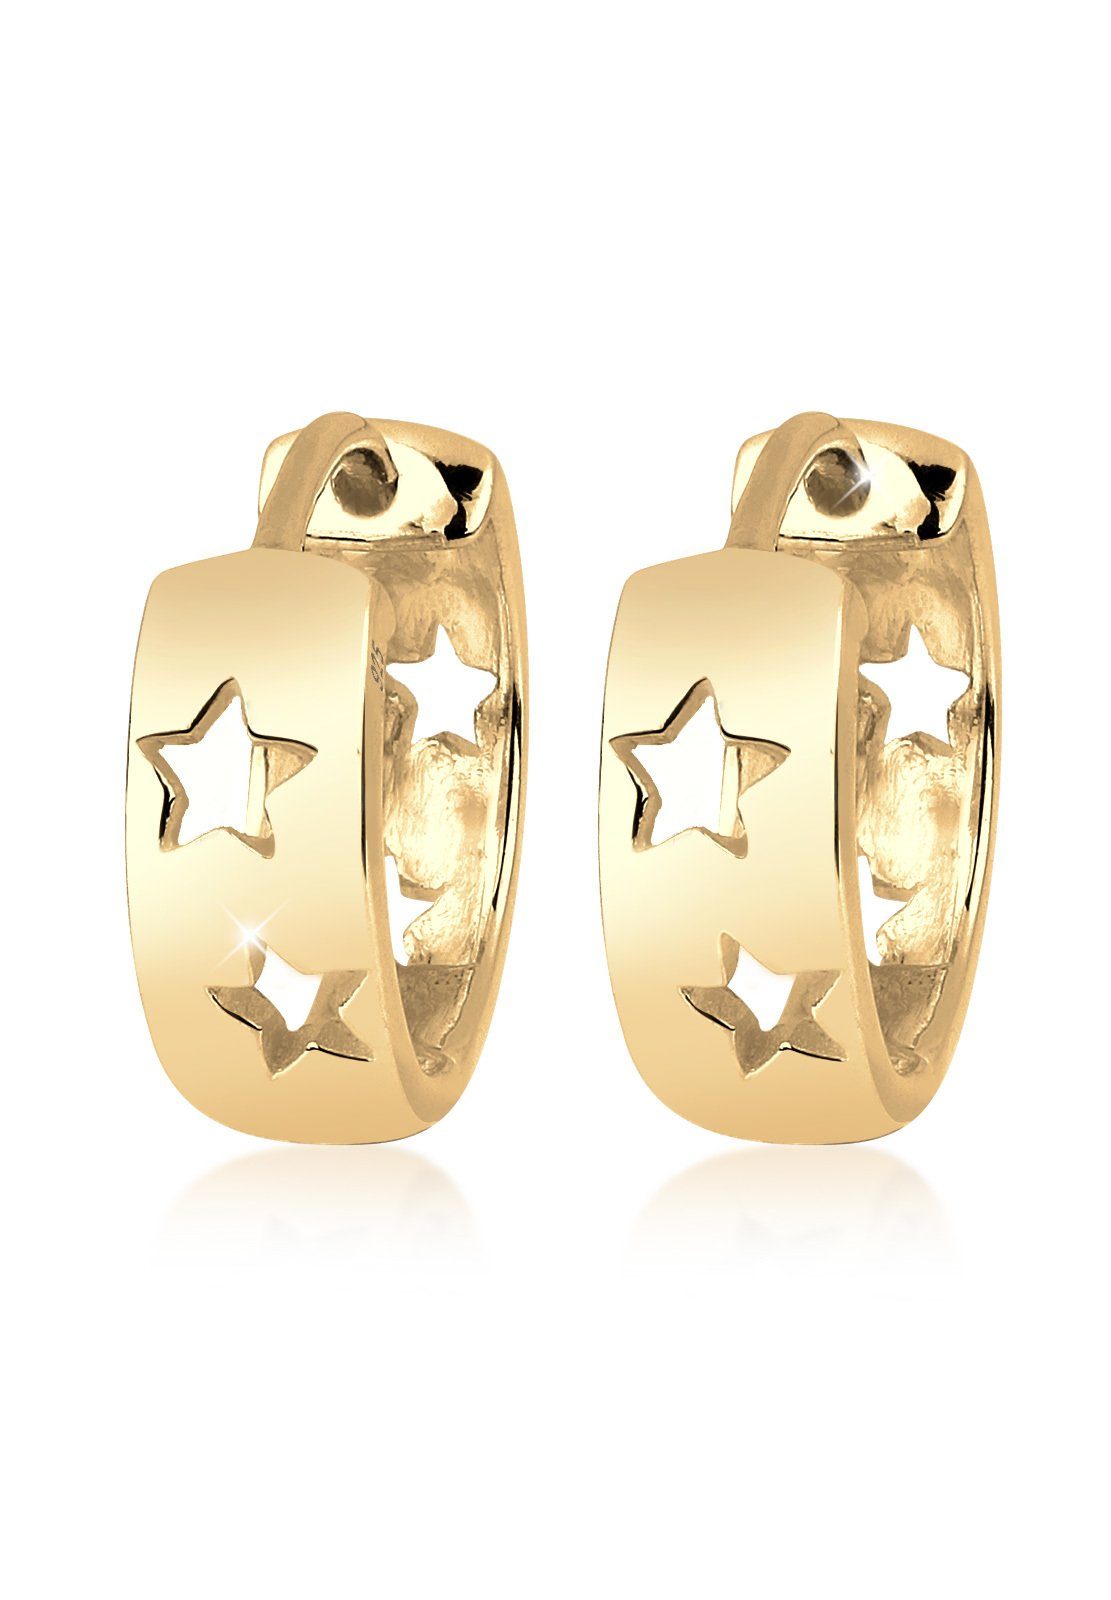 Elli Paar Creolen Creolen Sterne Astro Trend 925 Silber Gold